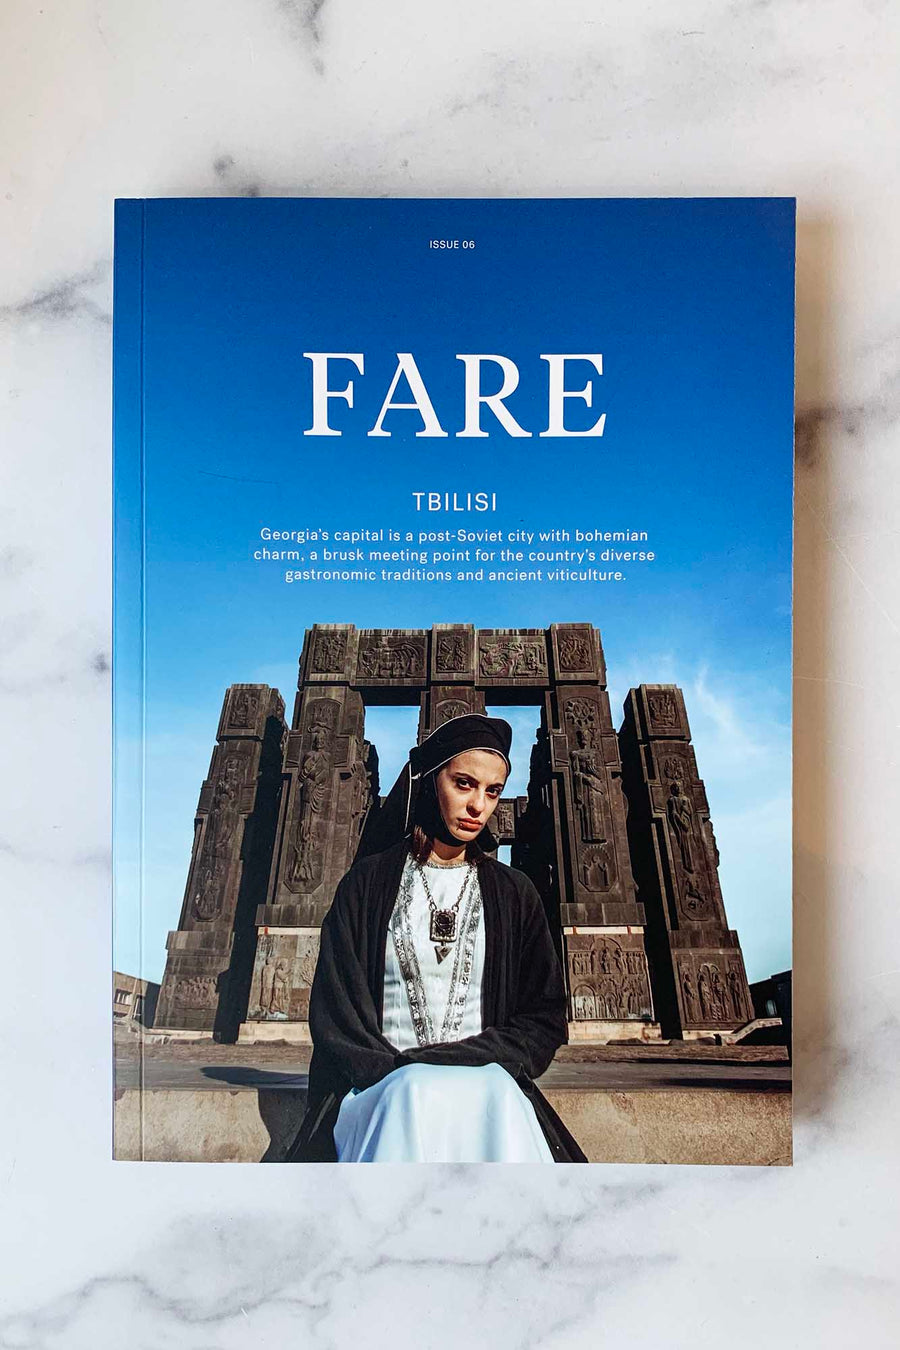 Fare Issue 06: Tbilisi